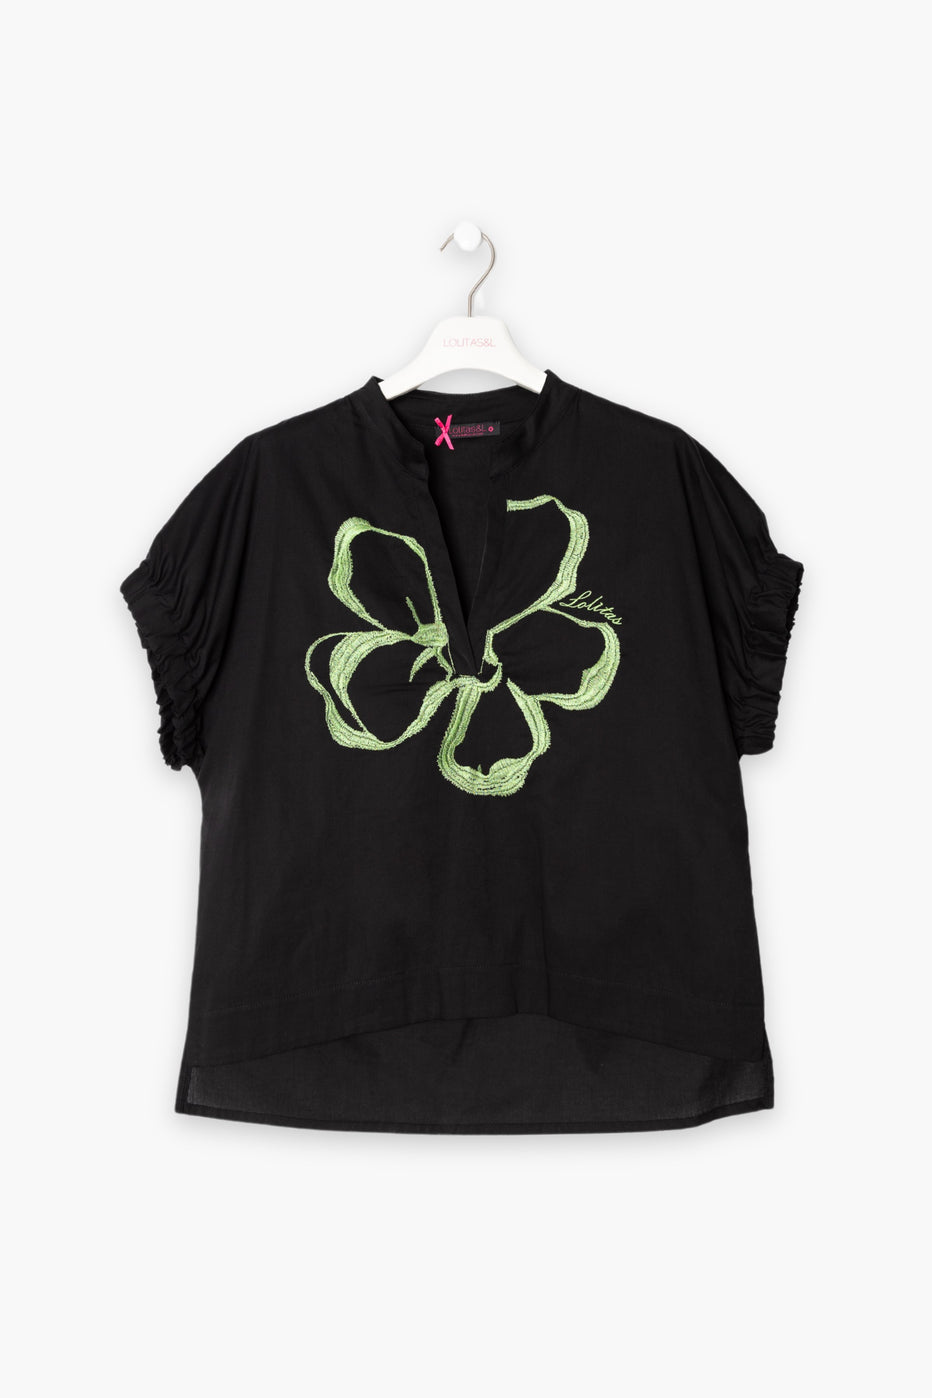 Camiseta negra estampado flor verde LolitasyL - lolitasyl.com